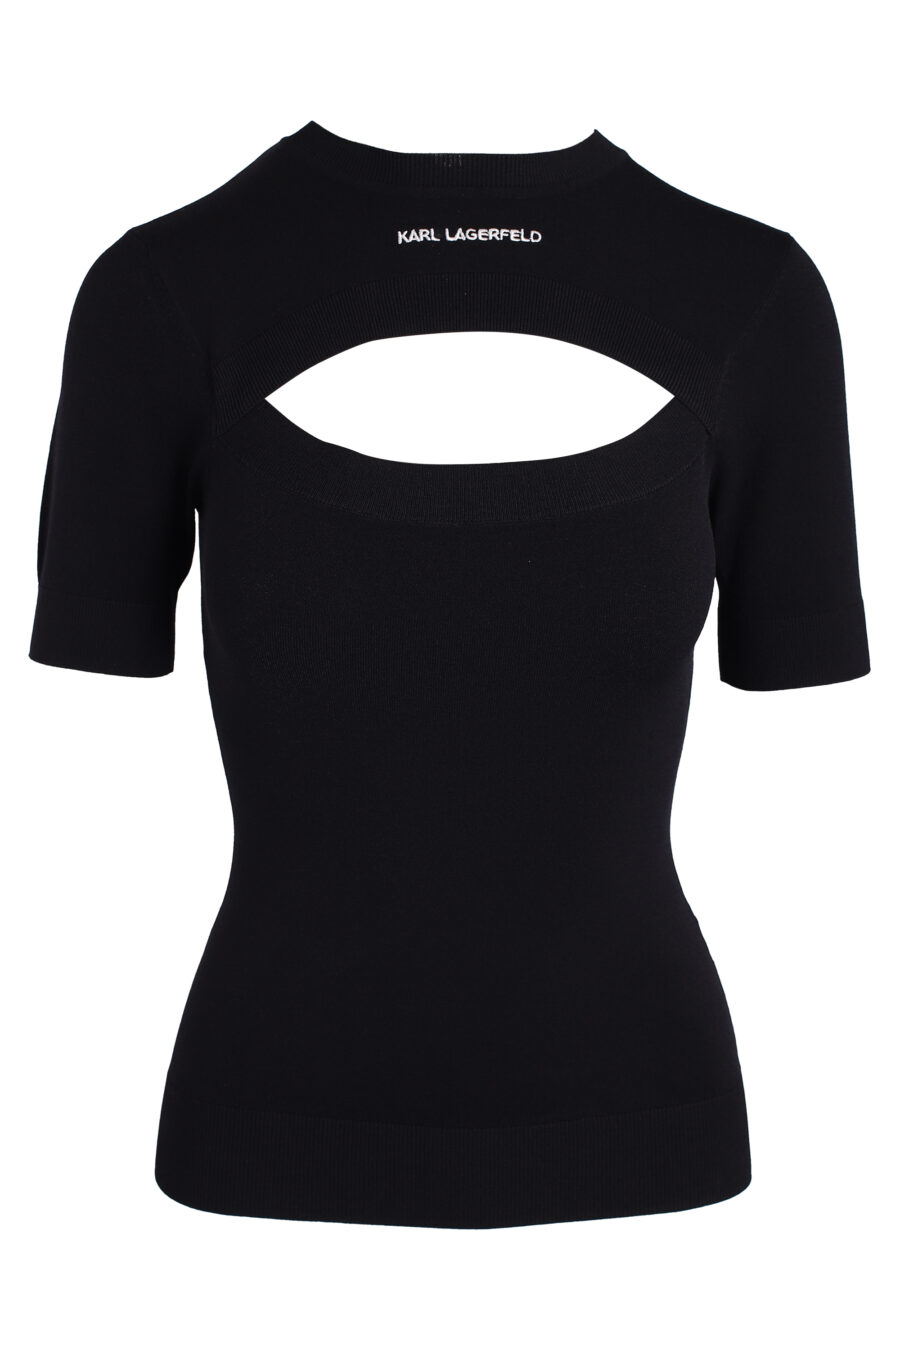 Camiseta negra con apertura en el centro - IMG 3359